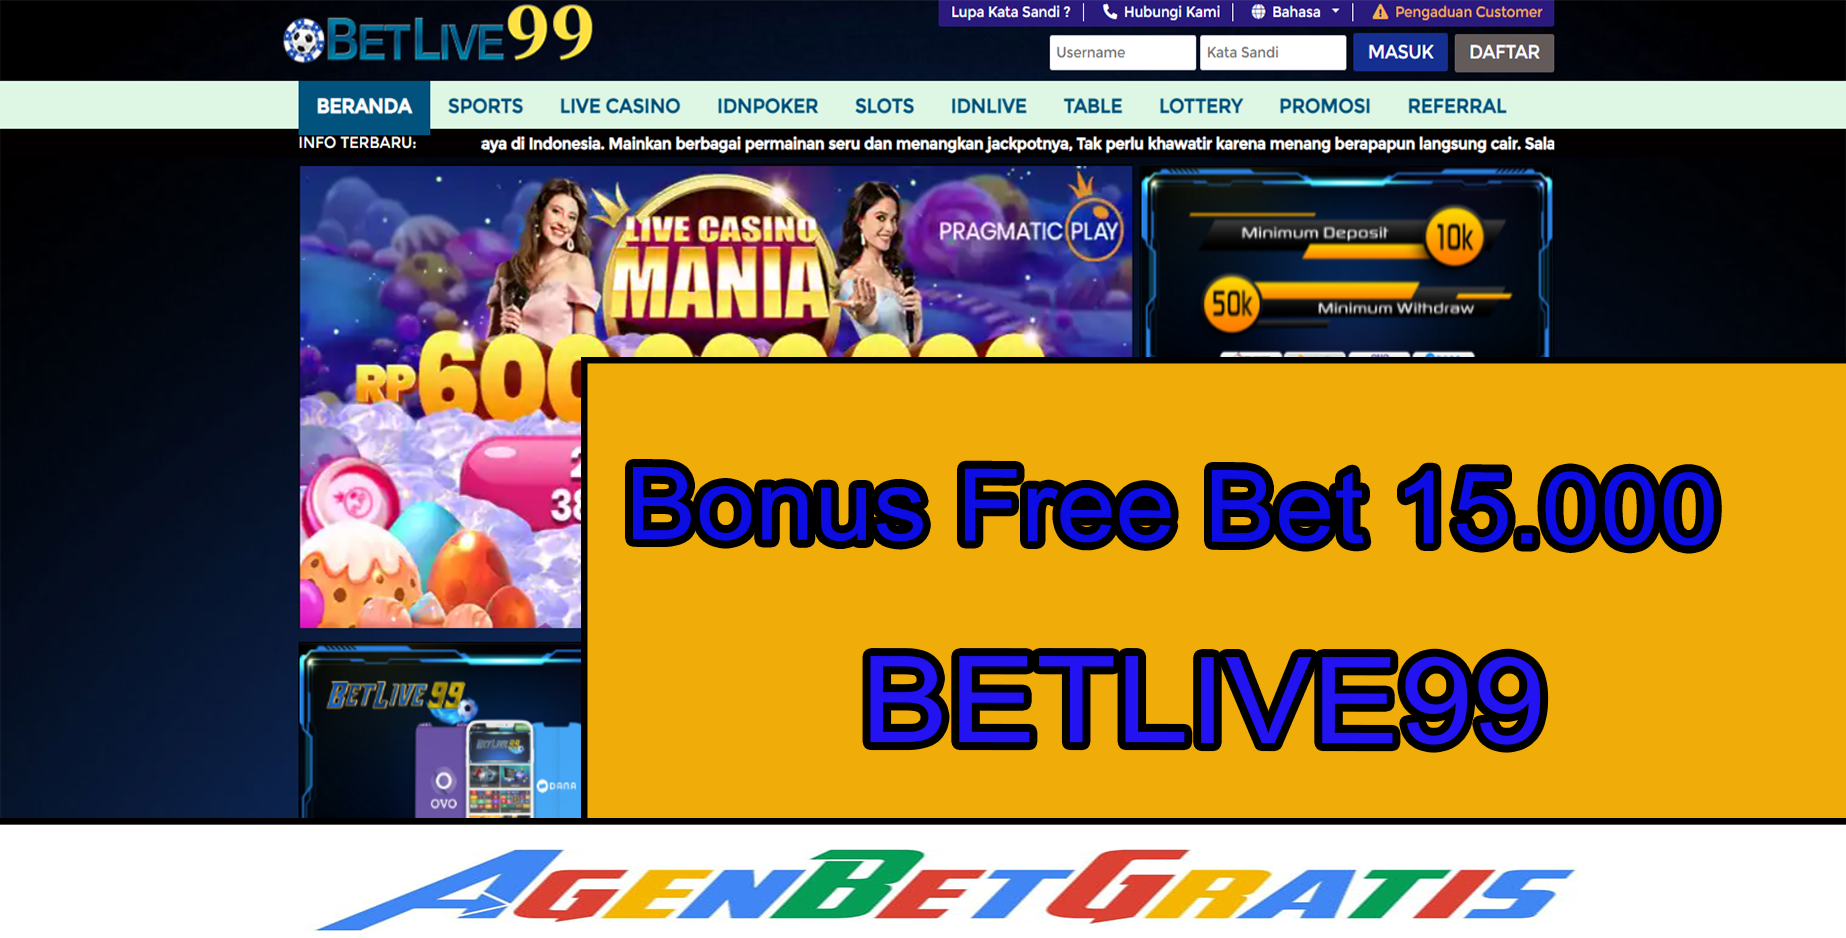 BETLIVE99 - Bonus FreeBet 15.000